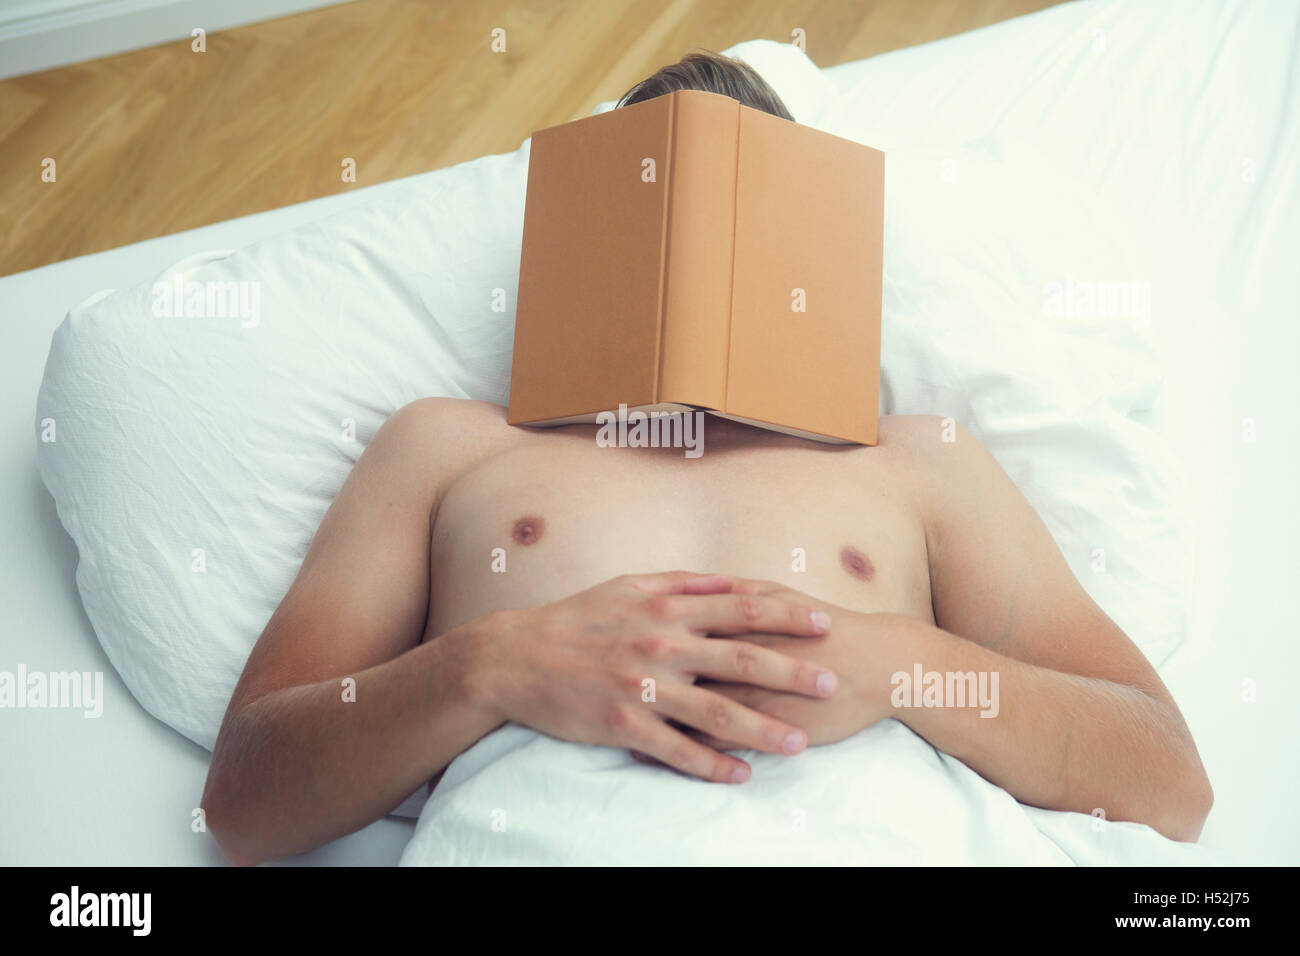 L'homme de dormir dans le lit avec des draps blancs avec un livre sur la tête Banque D'Images